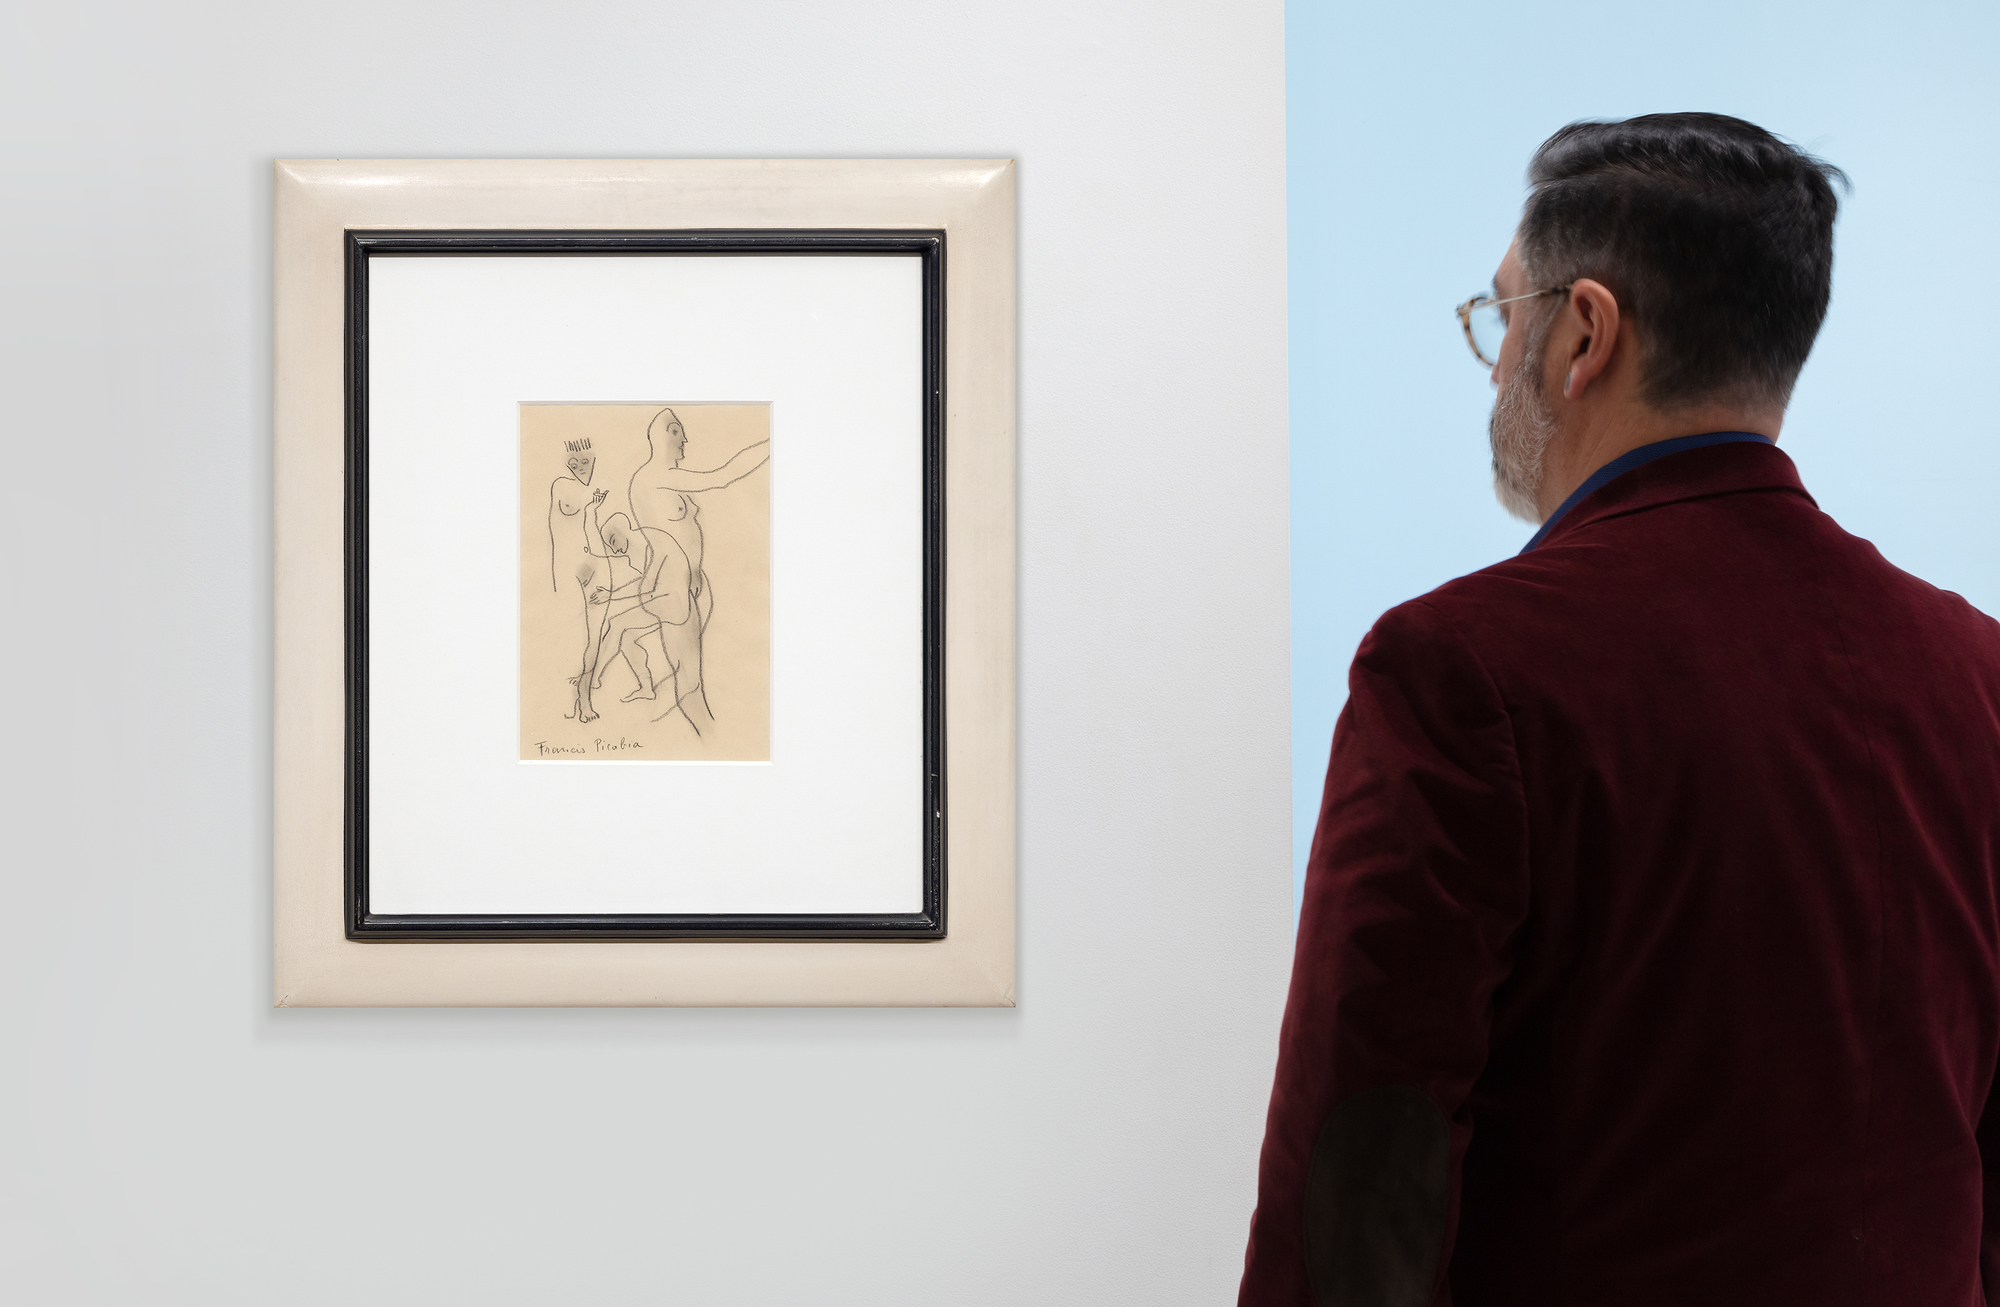 FRANCIS PICABIA - Trois personnages nus - crayon de couleur noir sur papier chamois - 11 1/2 x 8 in.